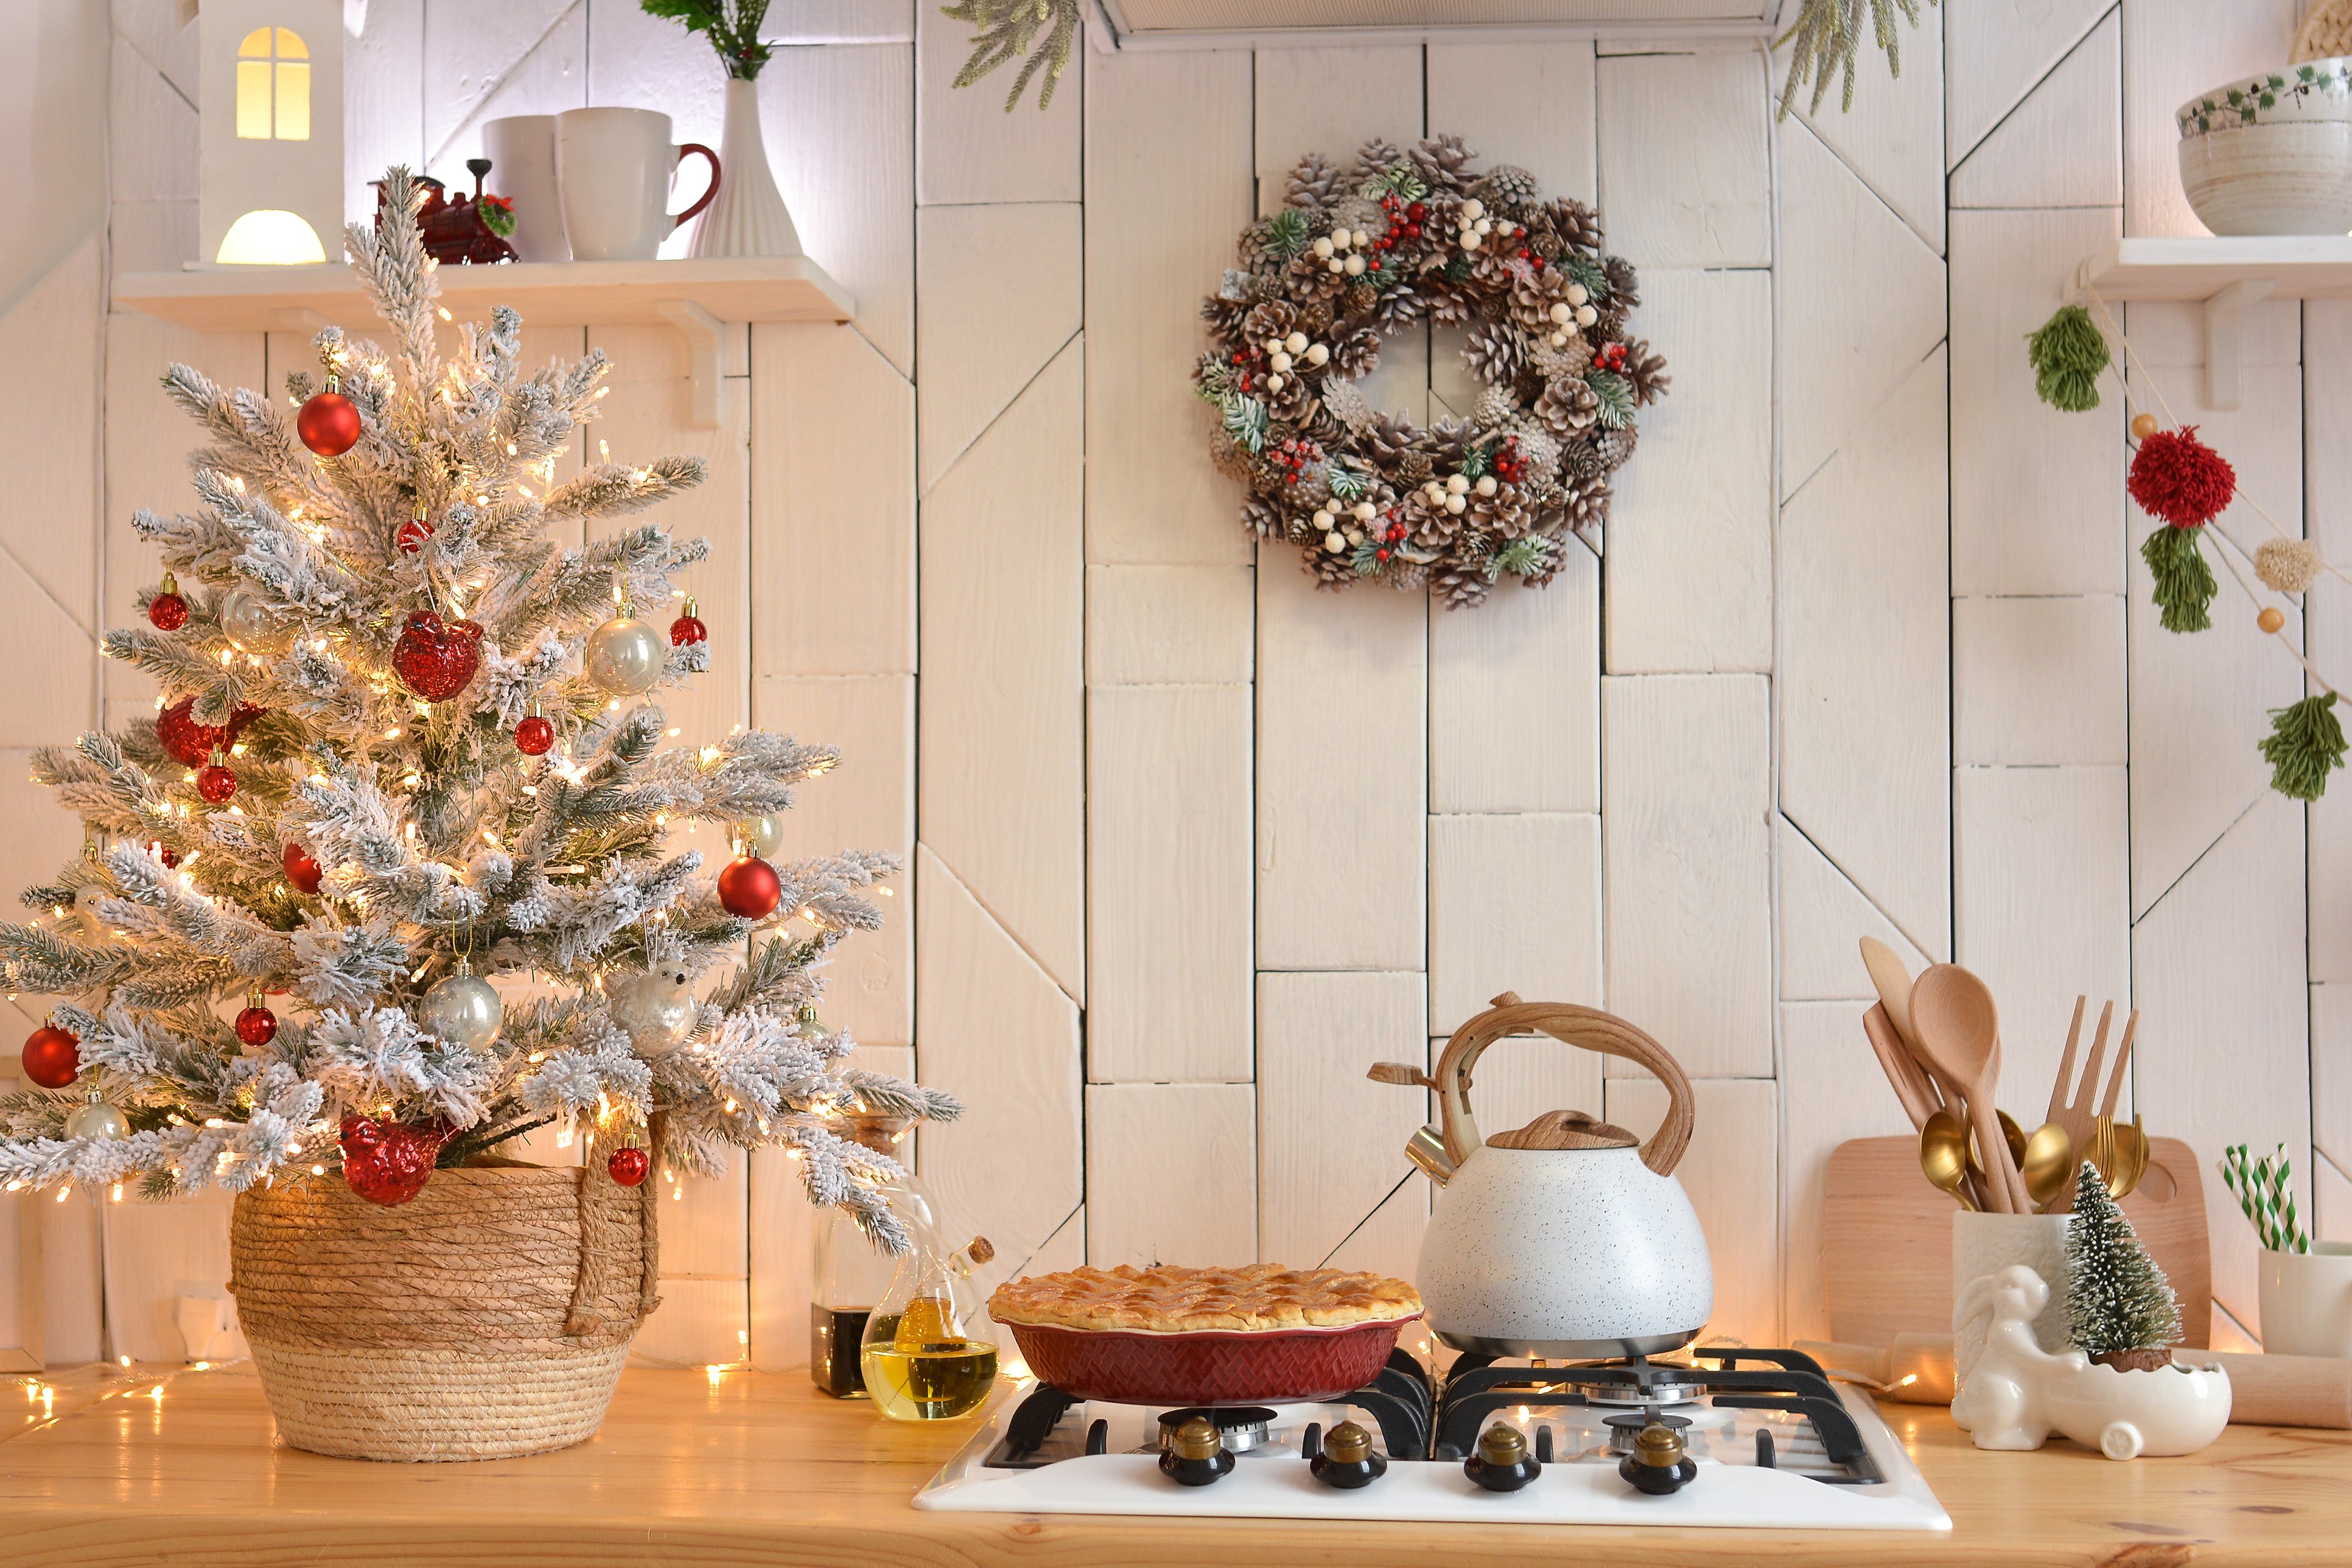 Χριστουγεννιάτικη διακόσμηση κουζίνας: 7+1 ιδέες για να τη στολίσετε με μοναδικό τρόπο και να “κλέψει” τις εντυπώσεις